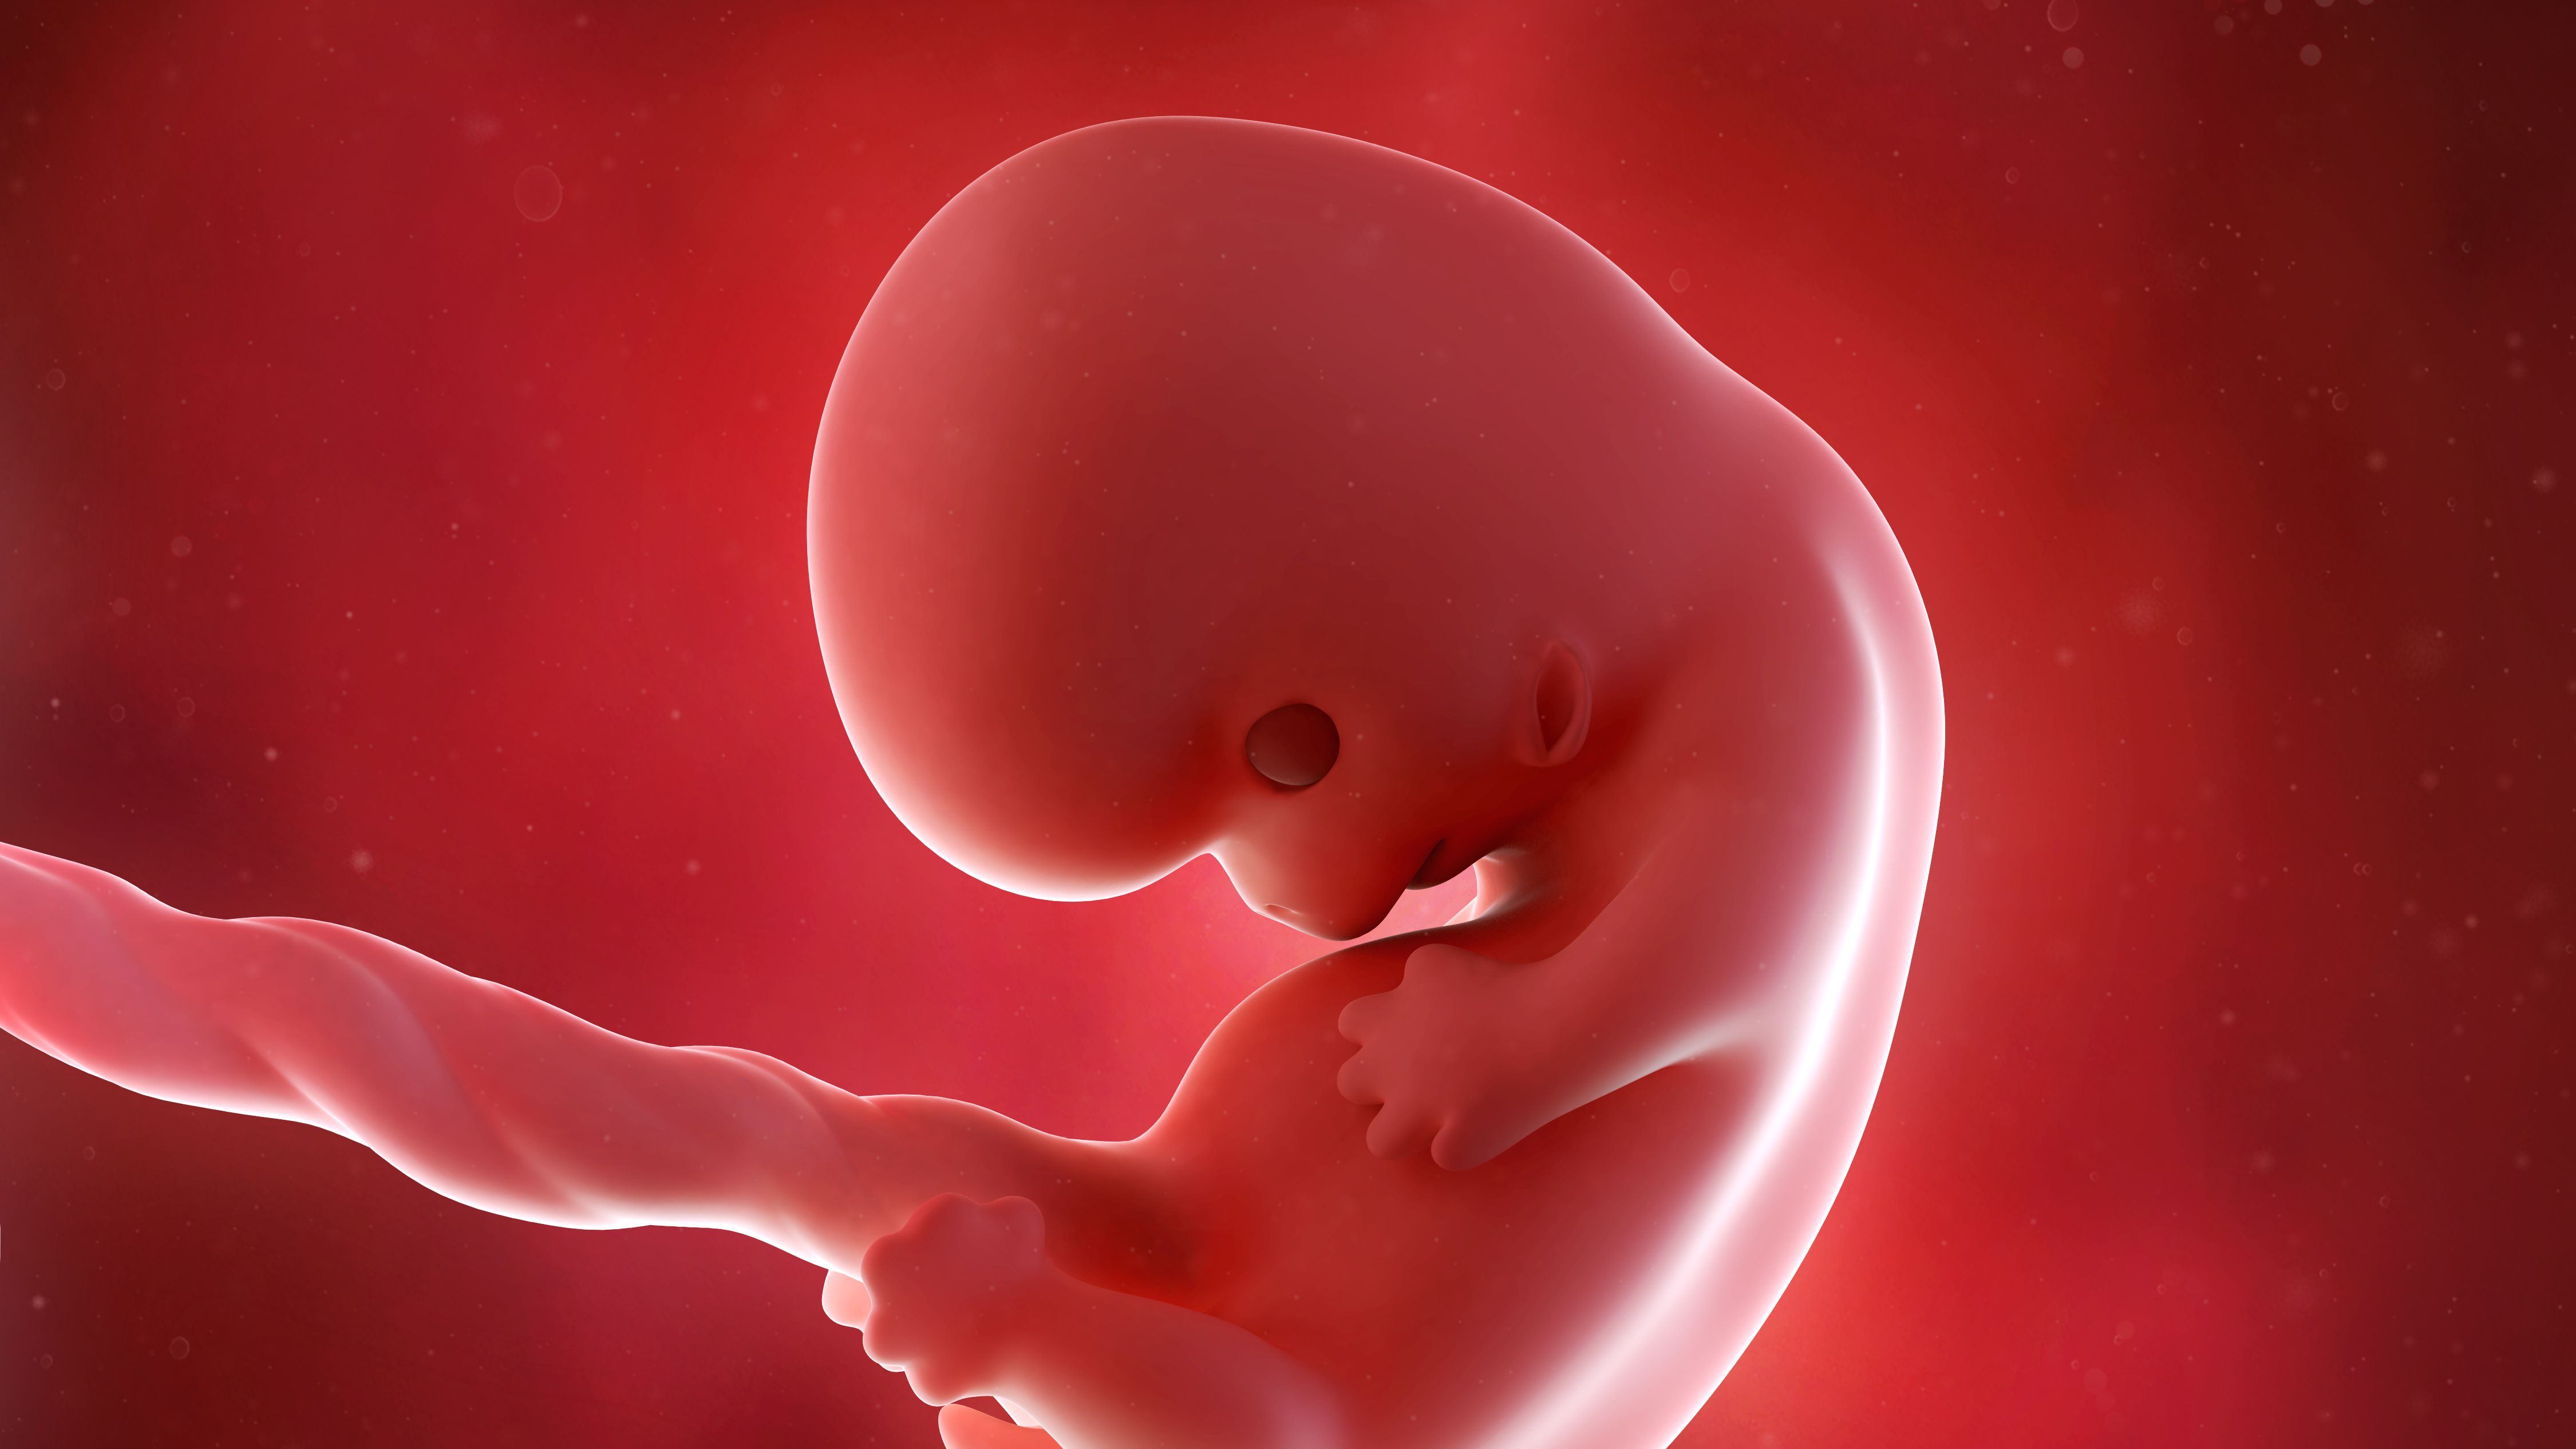 Сегодня 8 недель. Ребенок в утробе 8 недель. Зародыш в утробе матери 8 недель.